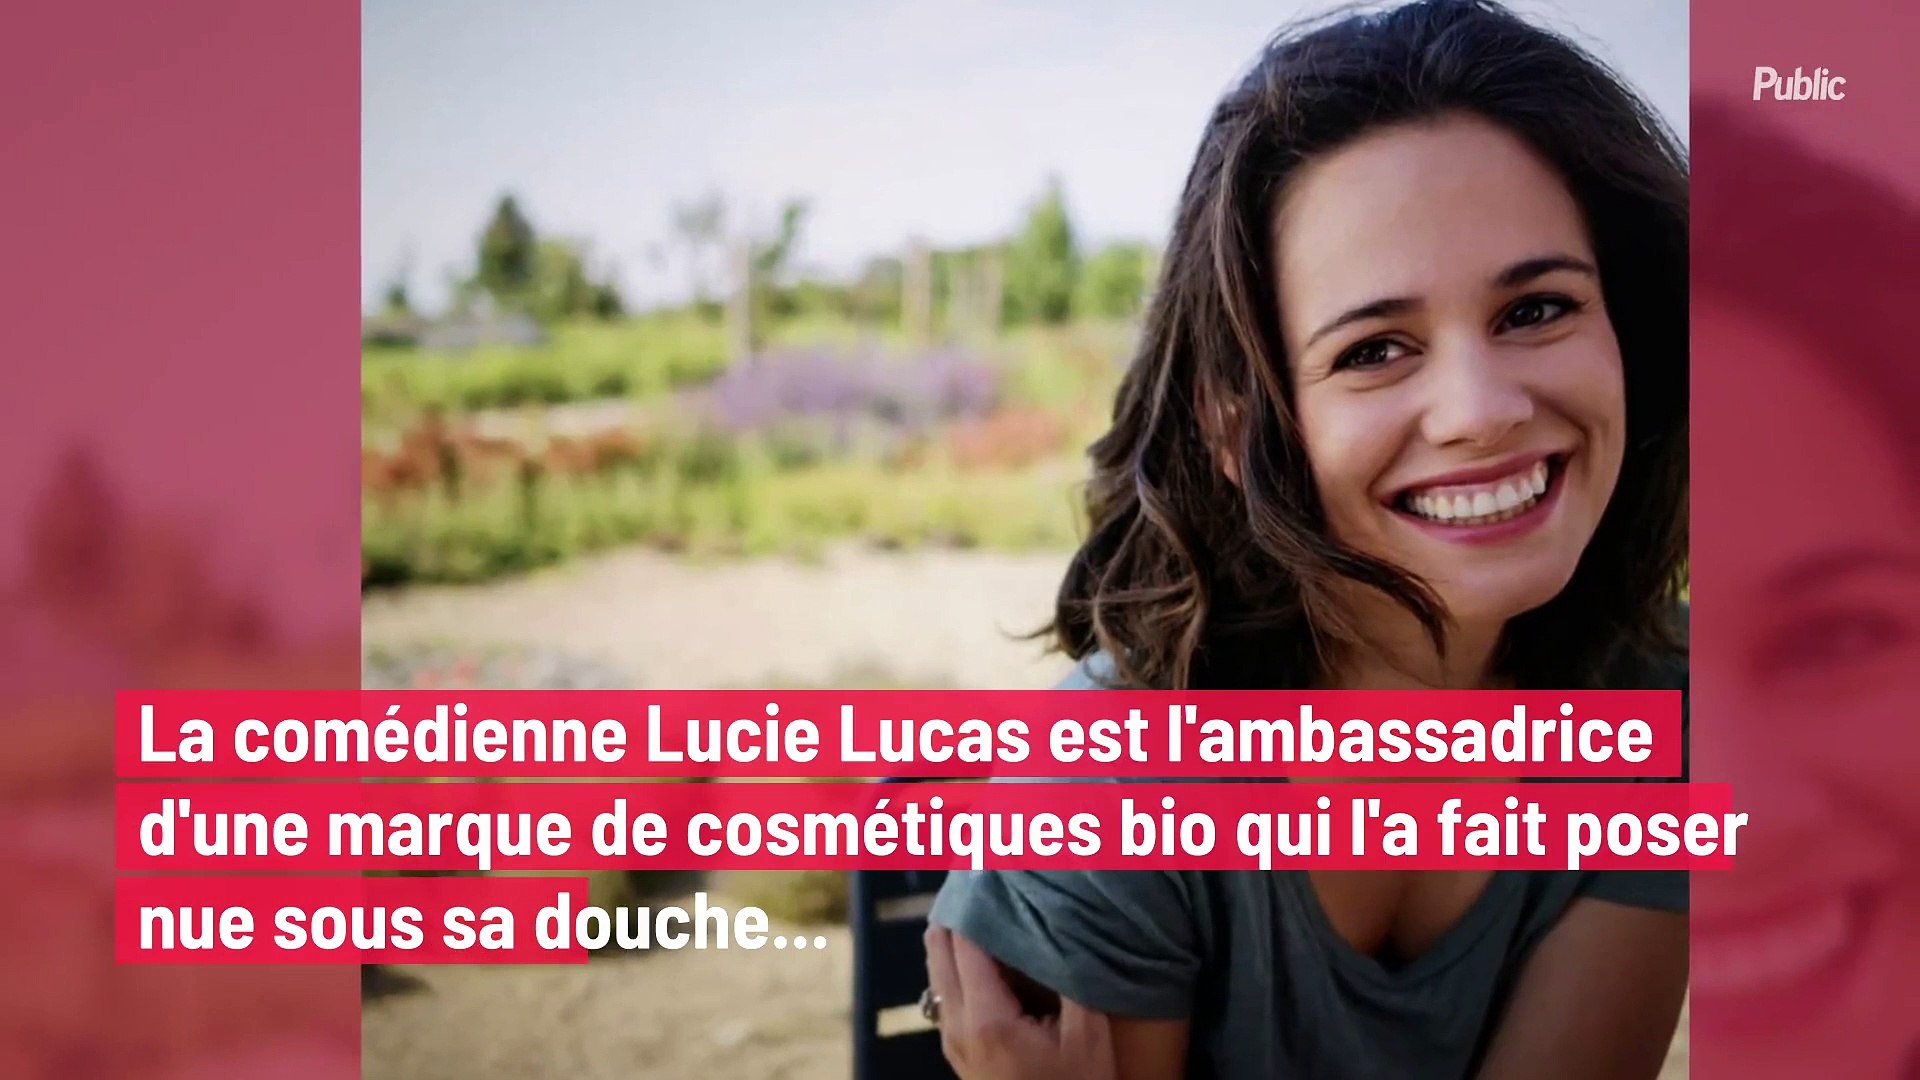 Lucie Lucas fait un buzz monstre sur Internet ! - Vidéo Dailymotion